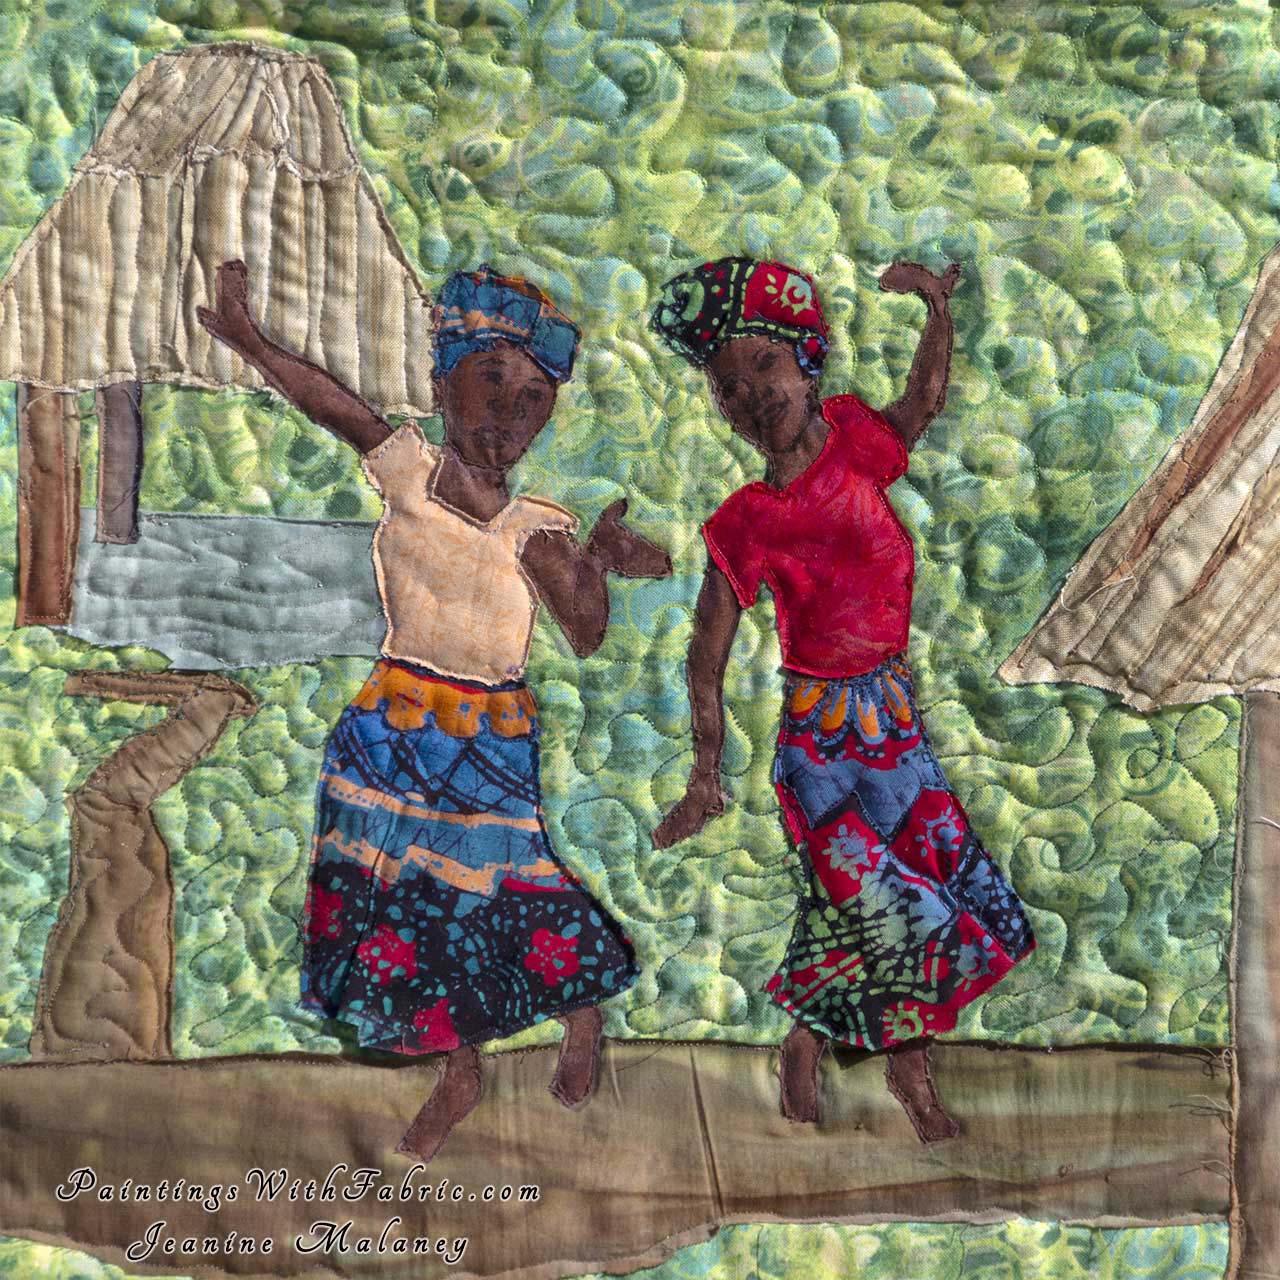 A Africa Celebration Art Quilt Landscape Quilt, Watercolor Quilt